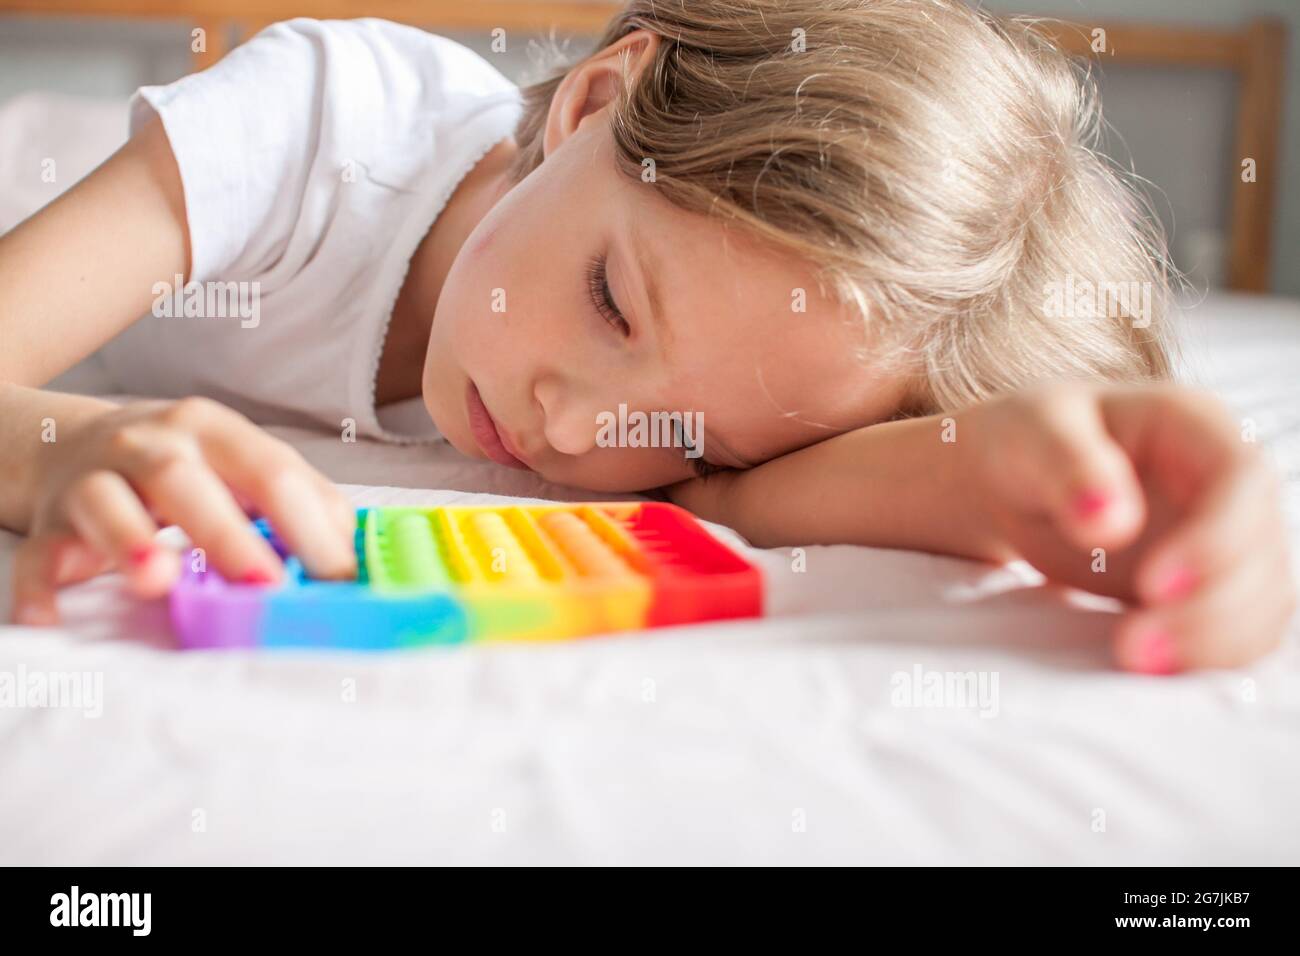 Petite fille joue avec le jouet sensoriel branché pop. La jeune fille appuie sur des bulles de silicone souple arc-en-ciel colorées. Soulagement du stress et de l'anxiété. Banque D'Images